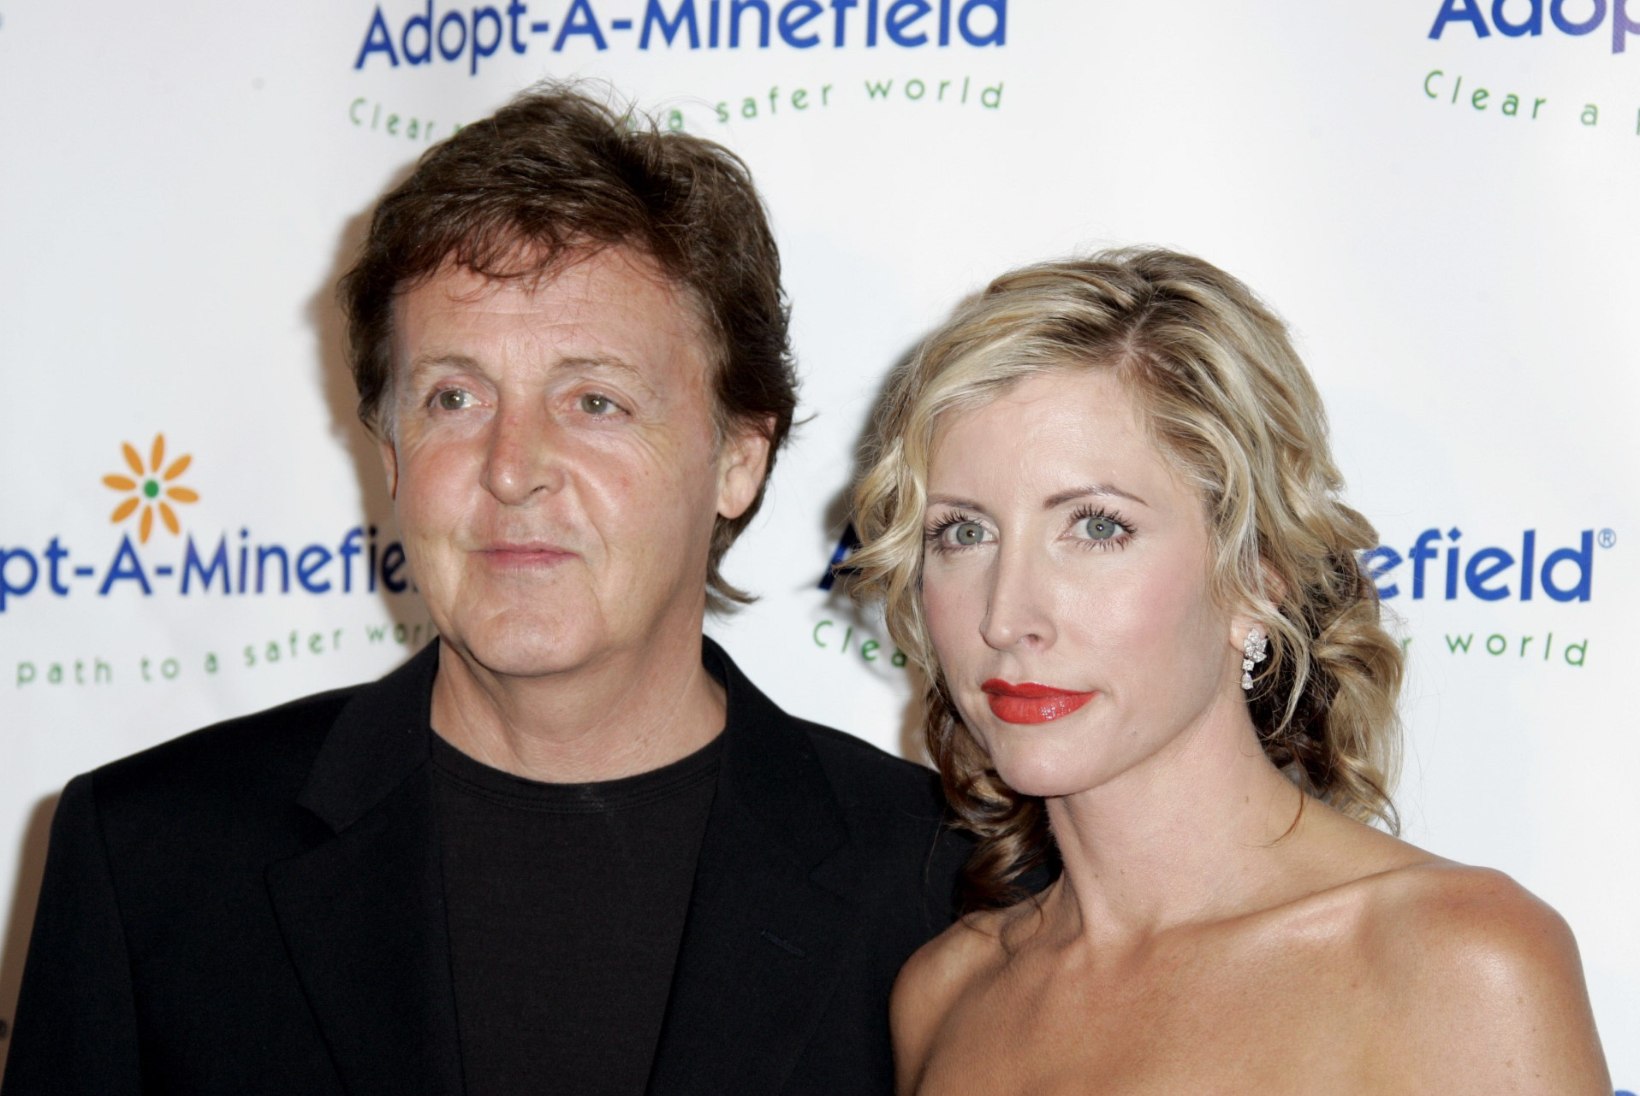 Paul McCartney kurikuulus eksnaine Heather Mills kihlus noore kallimaga